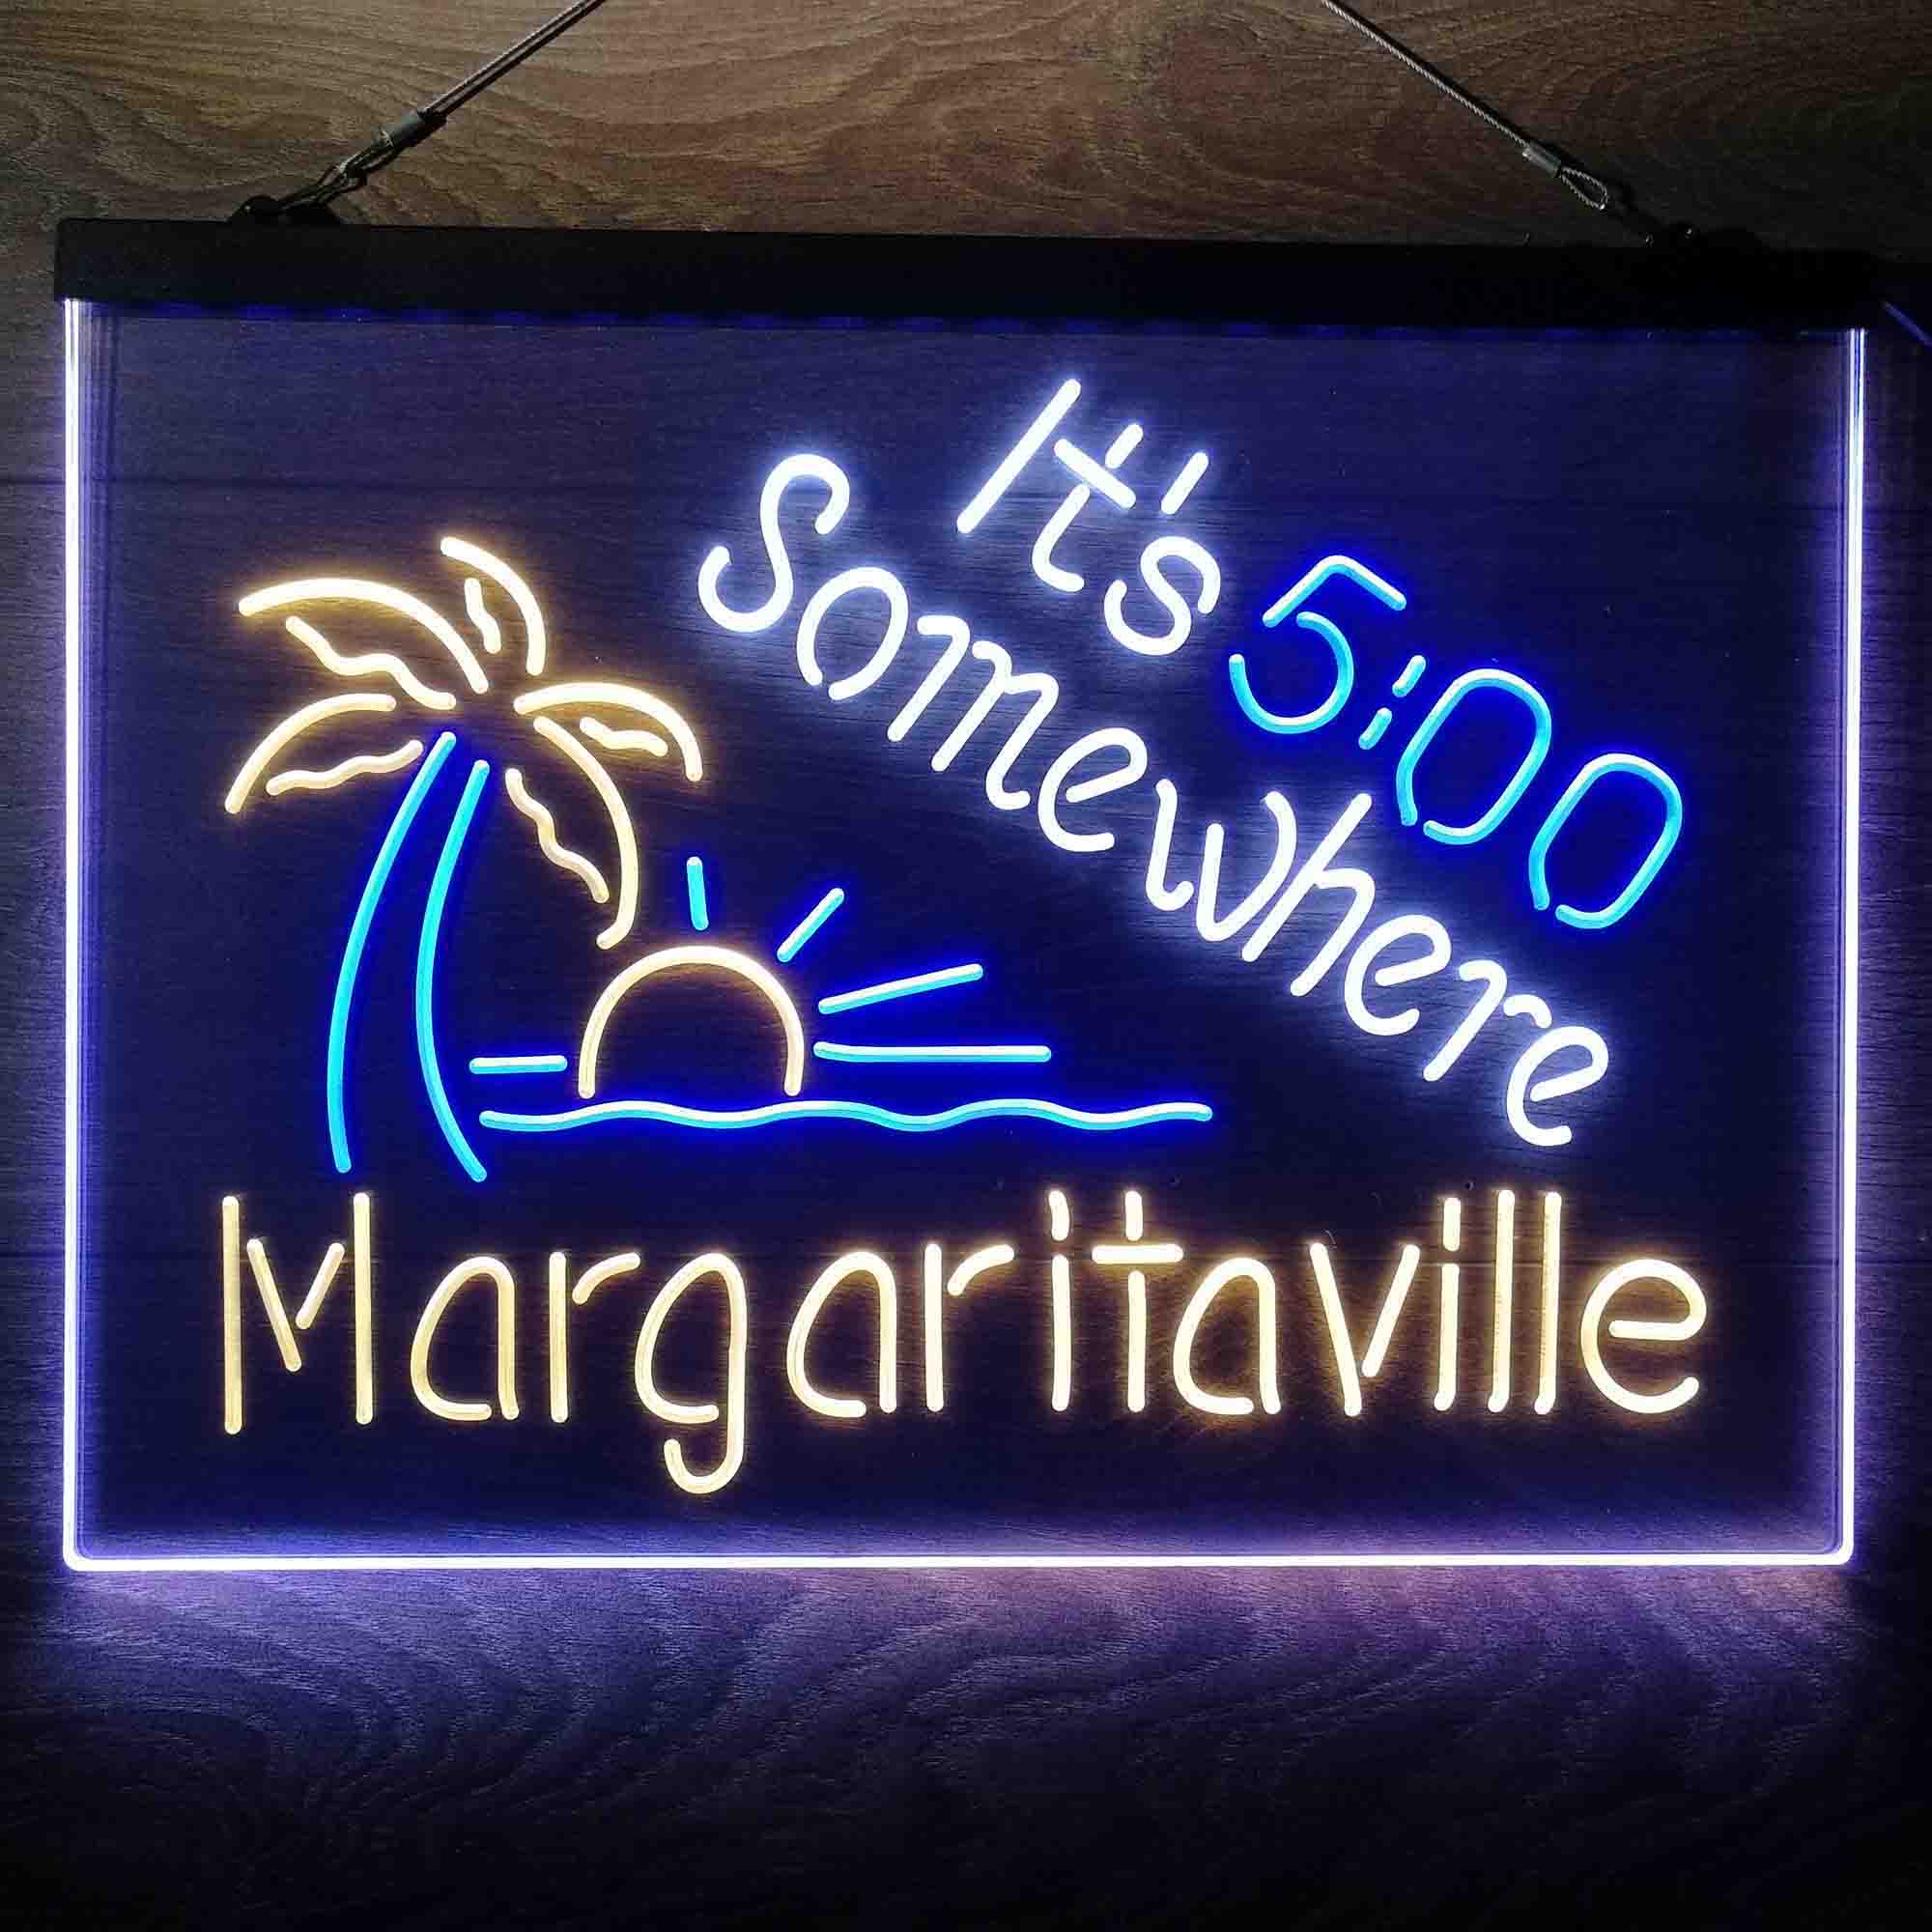 It's 500 Somewhere Margaritaville Home Bar Neon Light LED Sign